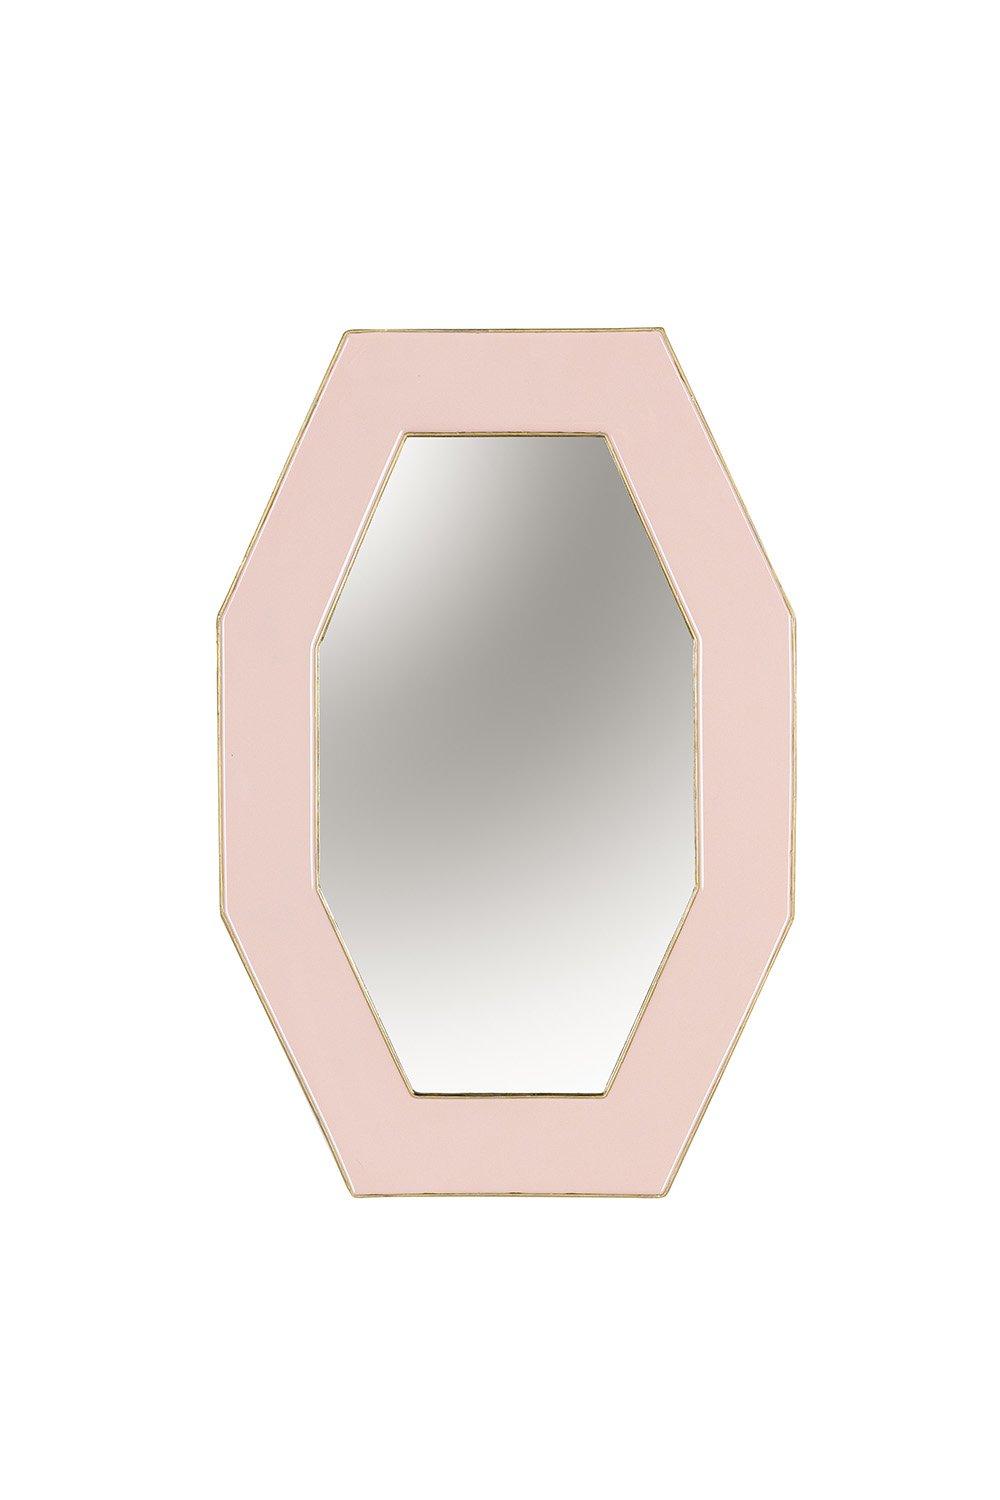 Framed Octagonal Wall Mirror